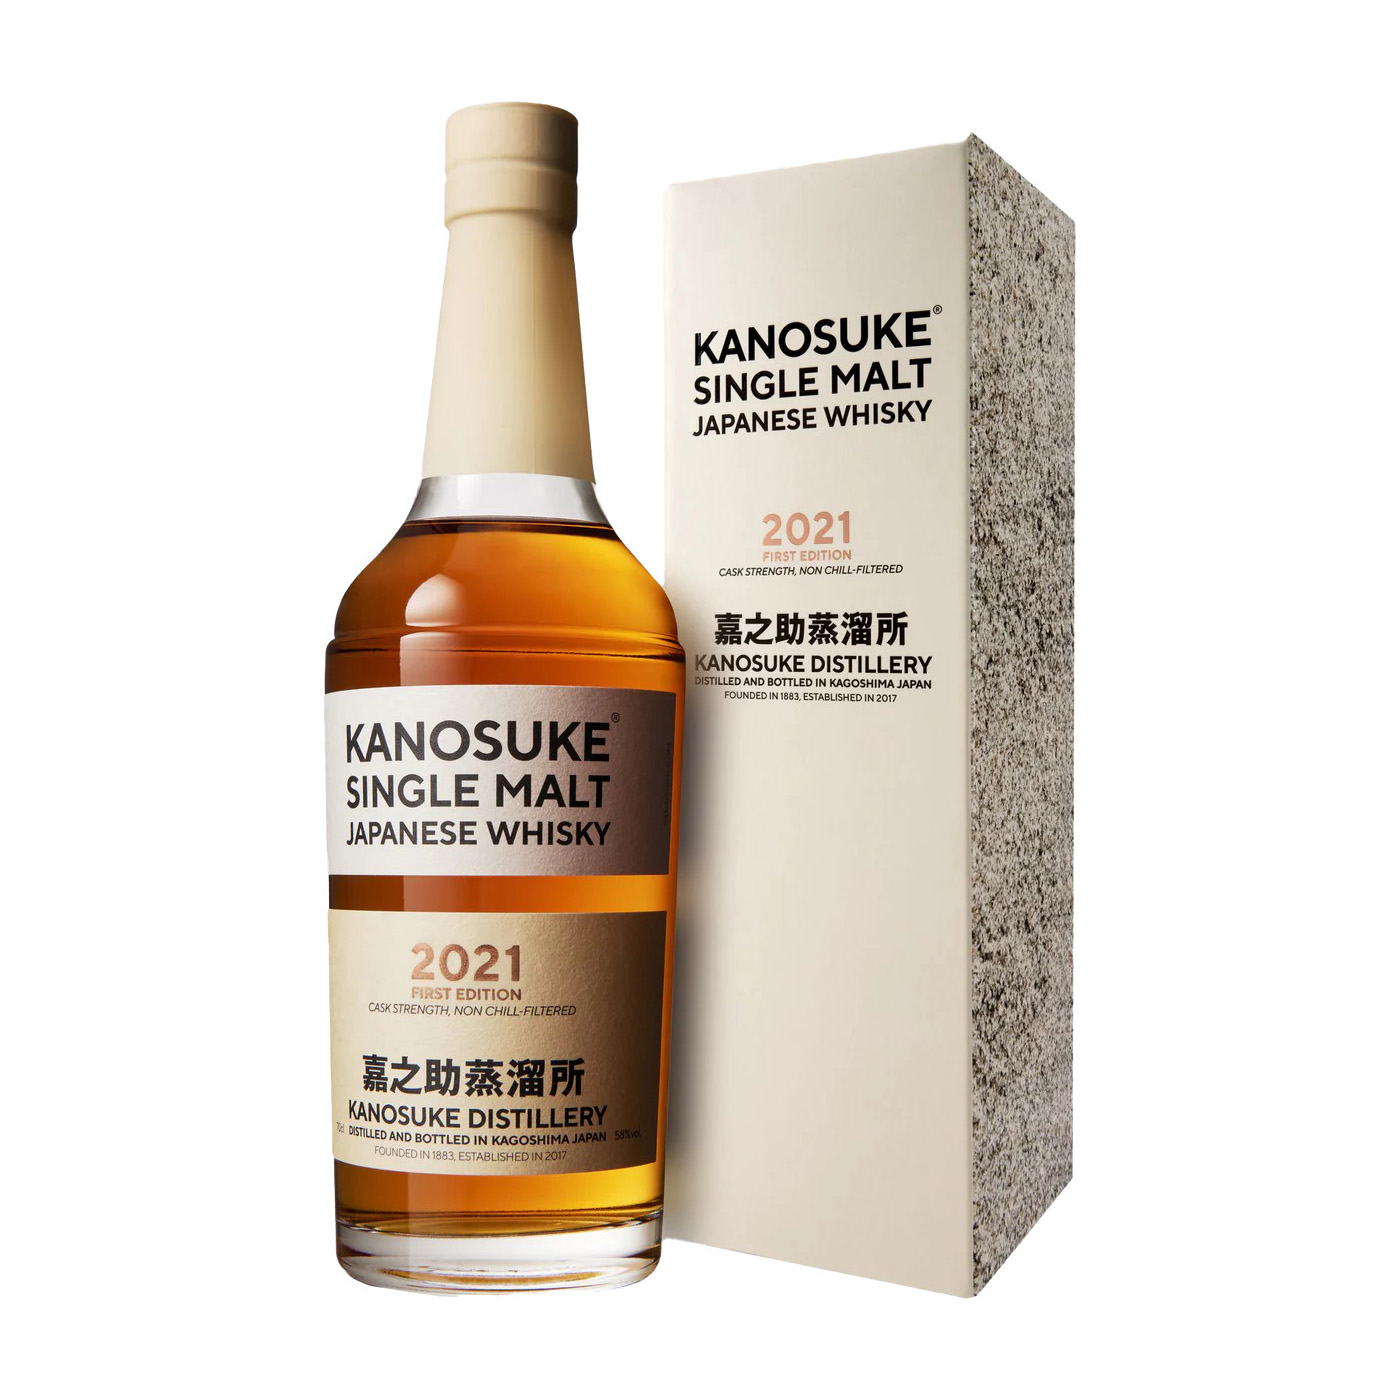 嘉之助蒸溜所 Kanosuke Single Malt Whisky (2021 First Edition)